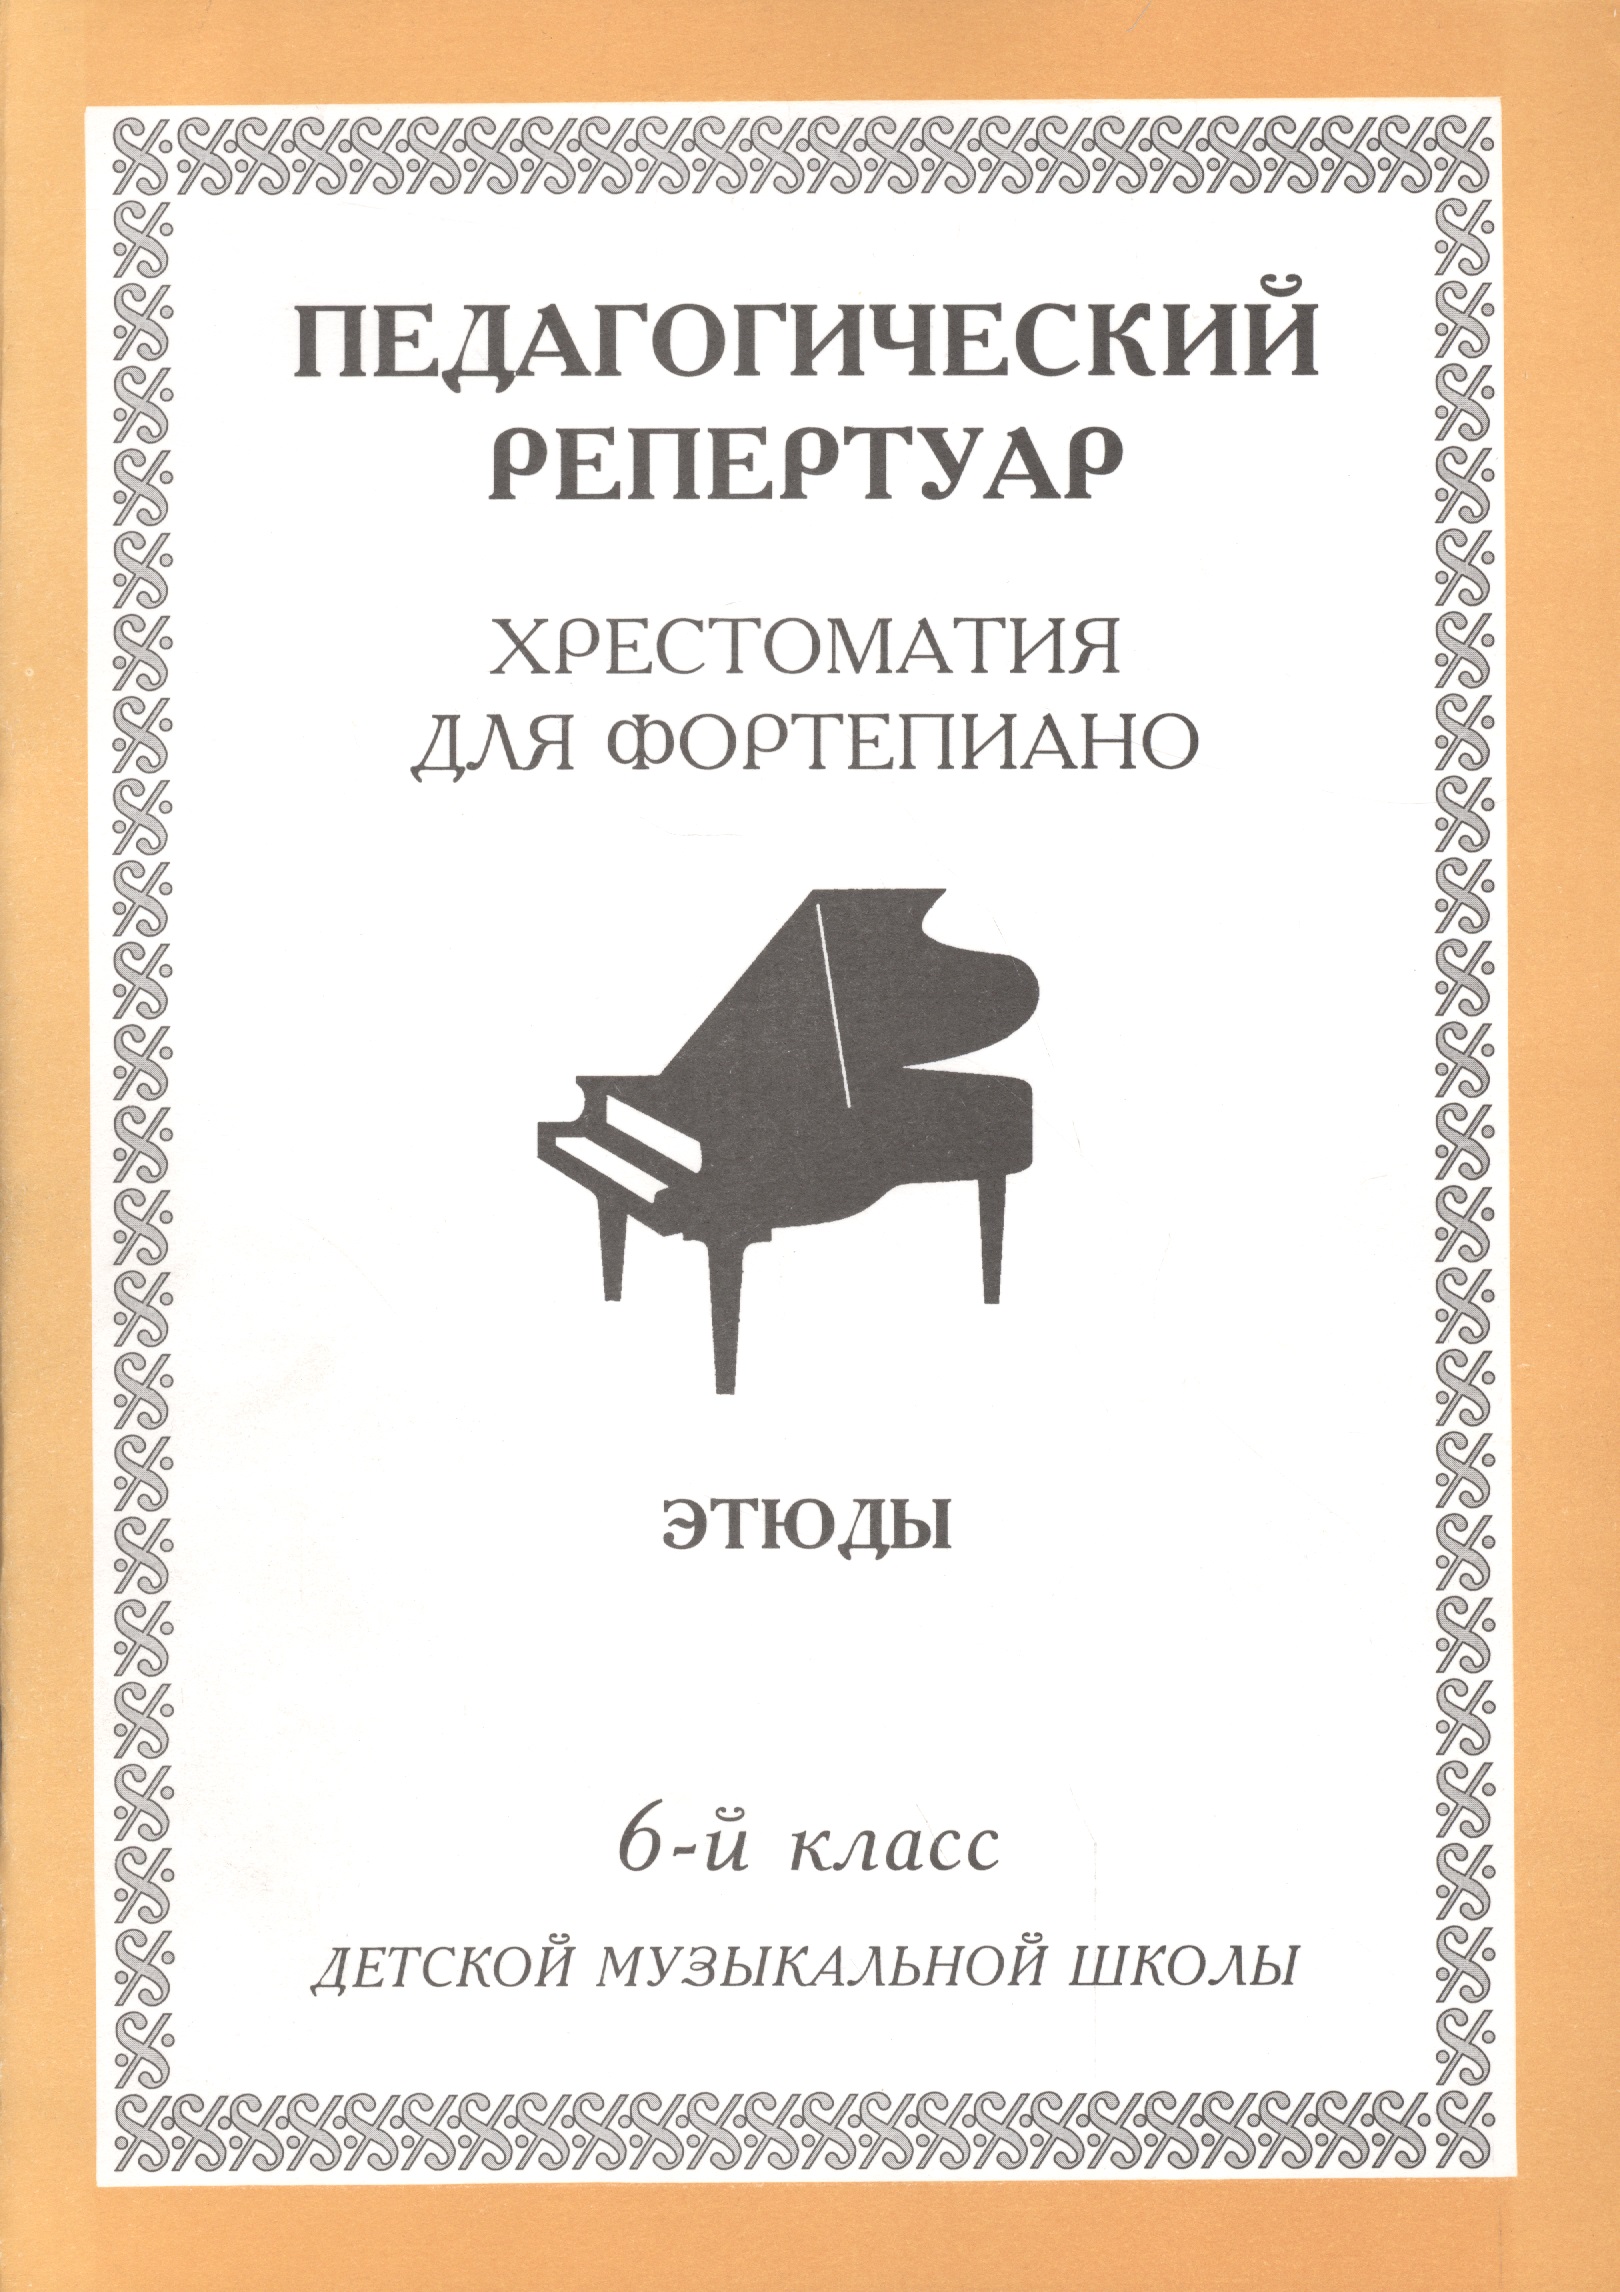 Хрестоматия для фортепиано, 6-й класс (пед. репертуар) Этюды.